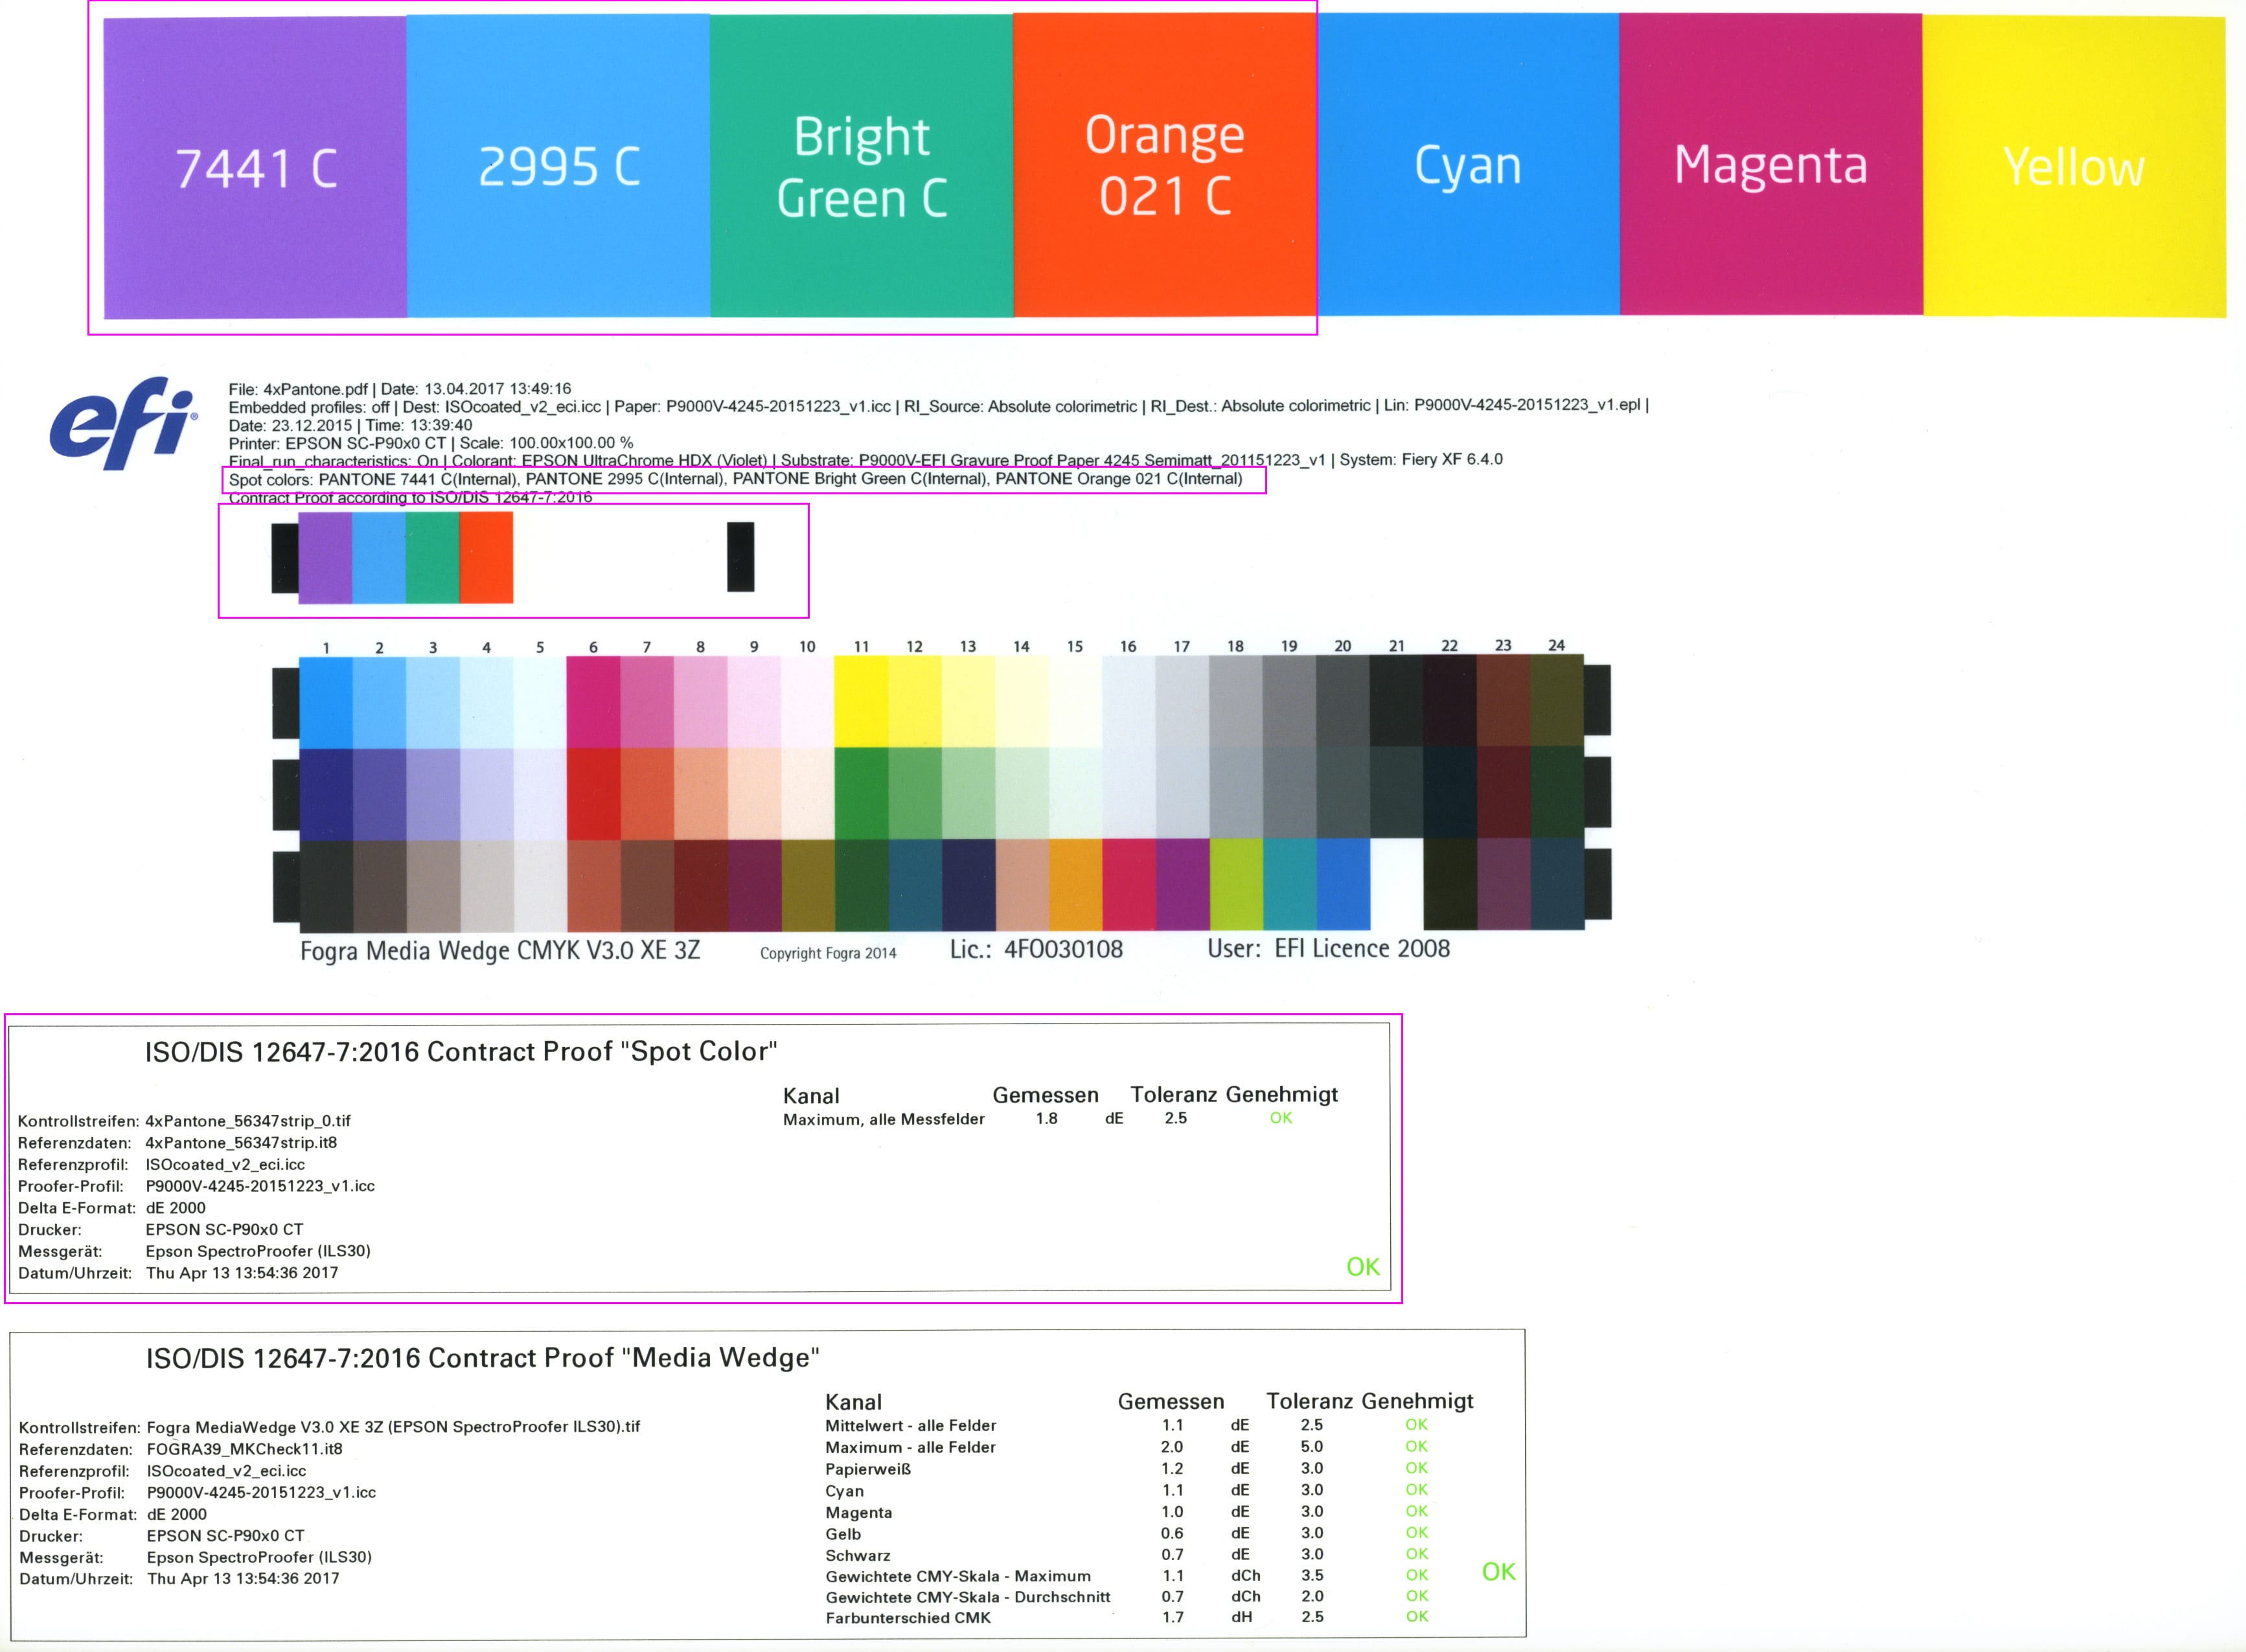 proof.de: Spotcolor média ék / spot színes média ék az ISO/DIS 12647-7:2016 szabvány szerinti értékeléssel.